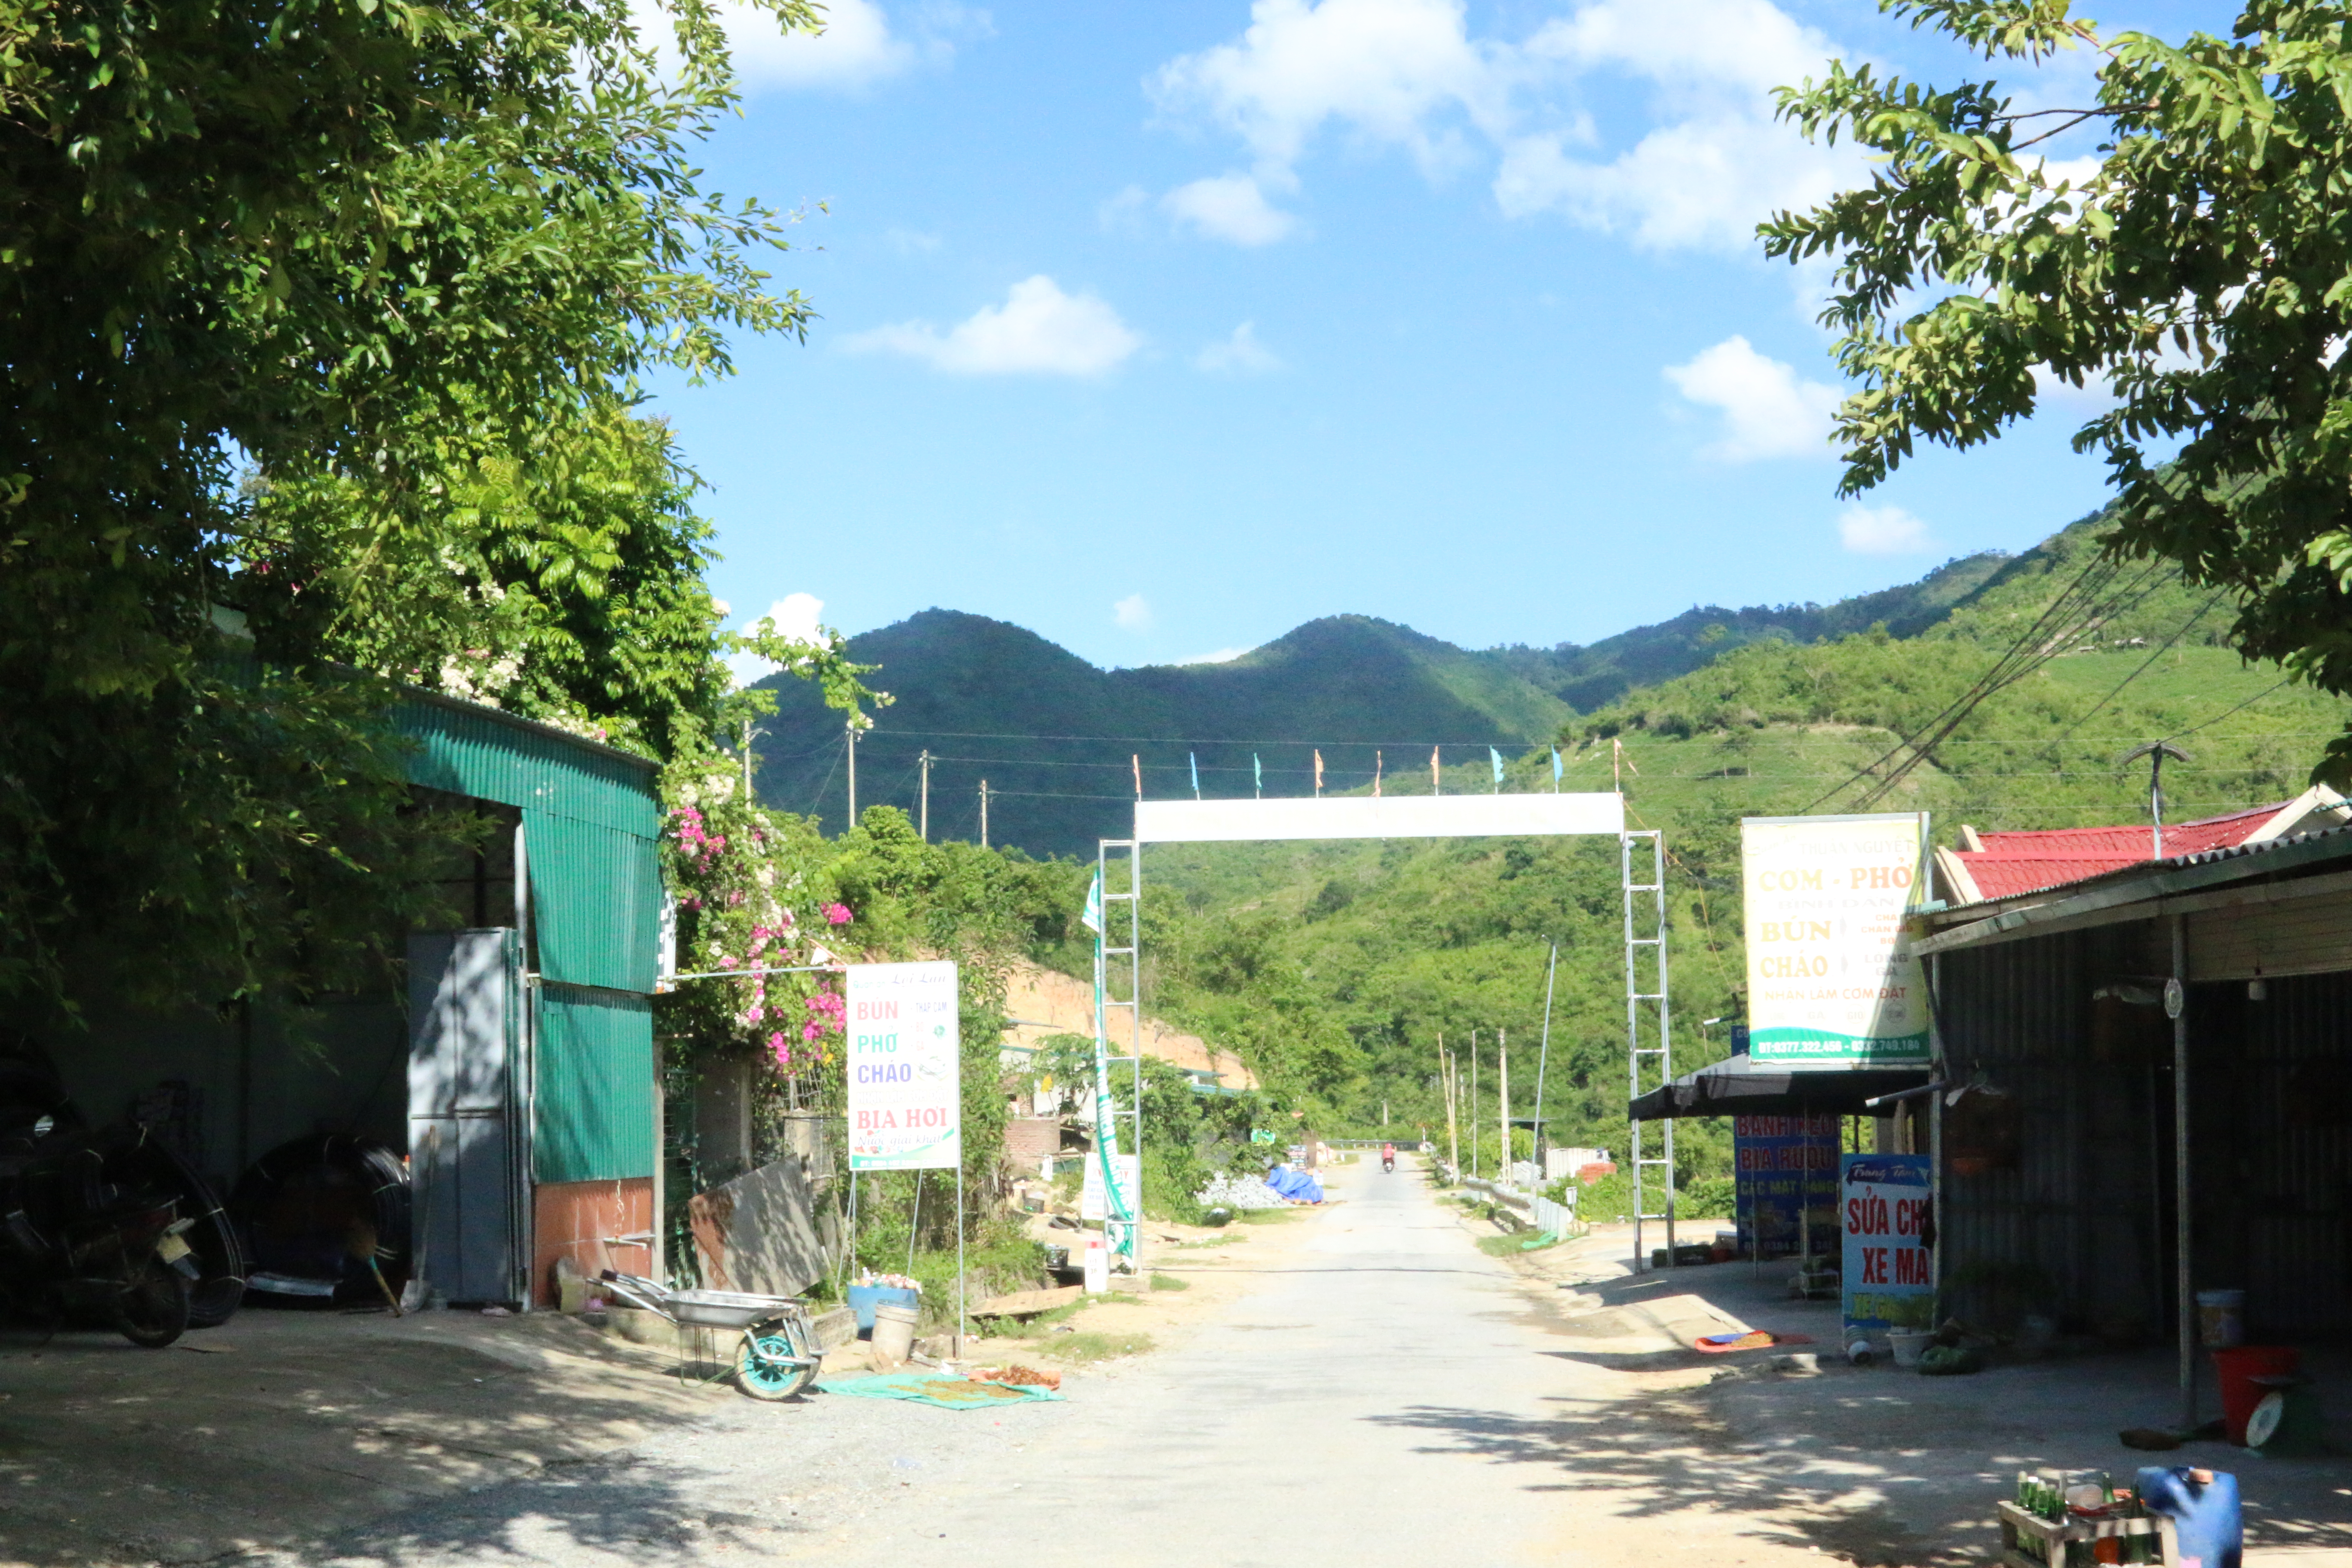 Hệ thống đường giao thông trên địa bàn huyện Mường Lát rất khang trang.